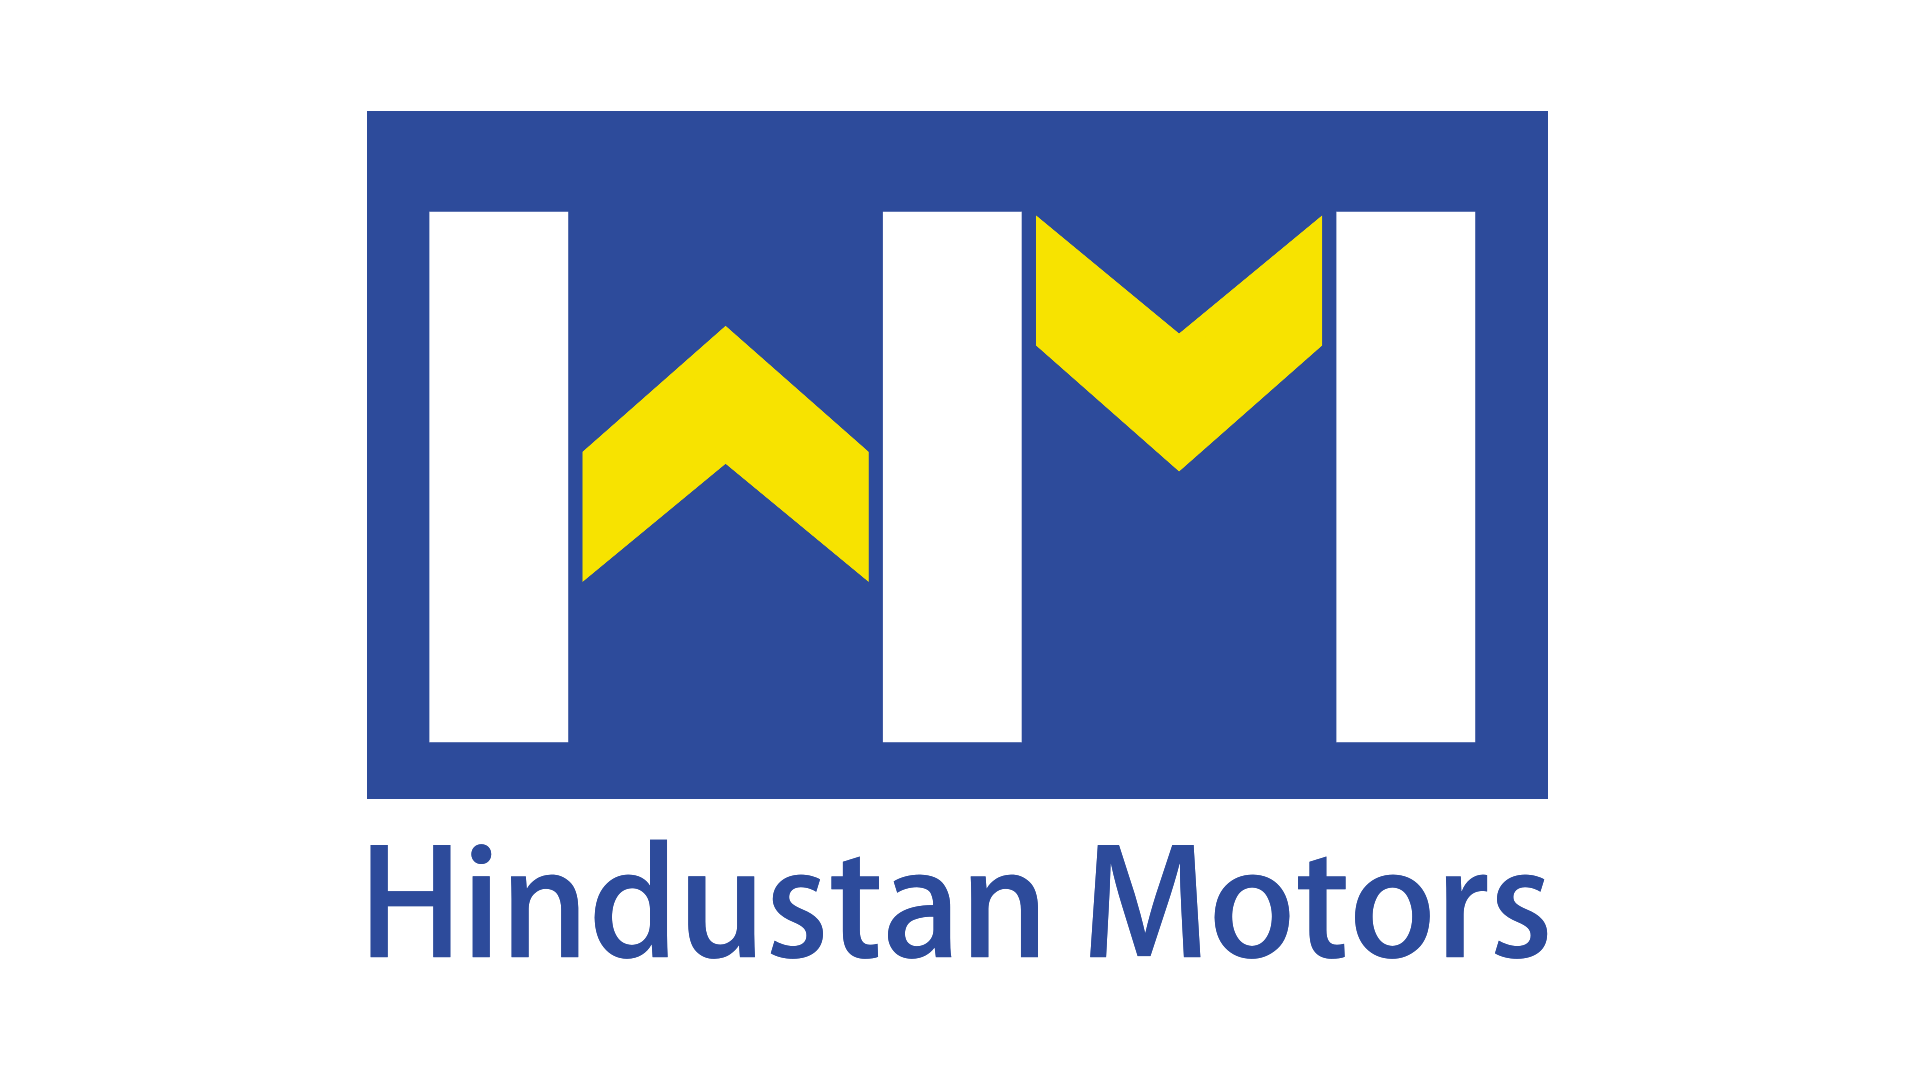 Hindustan Motors Ambassador Classic 1800 ISZ AC